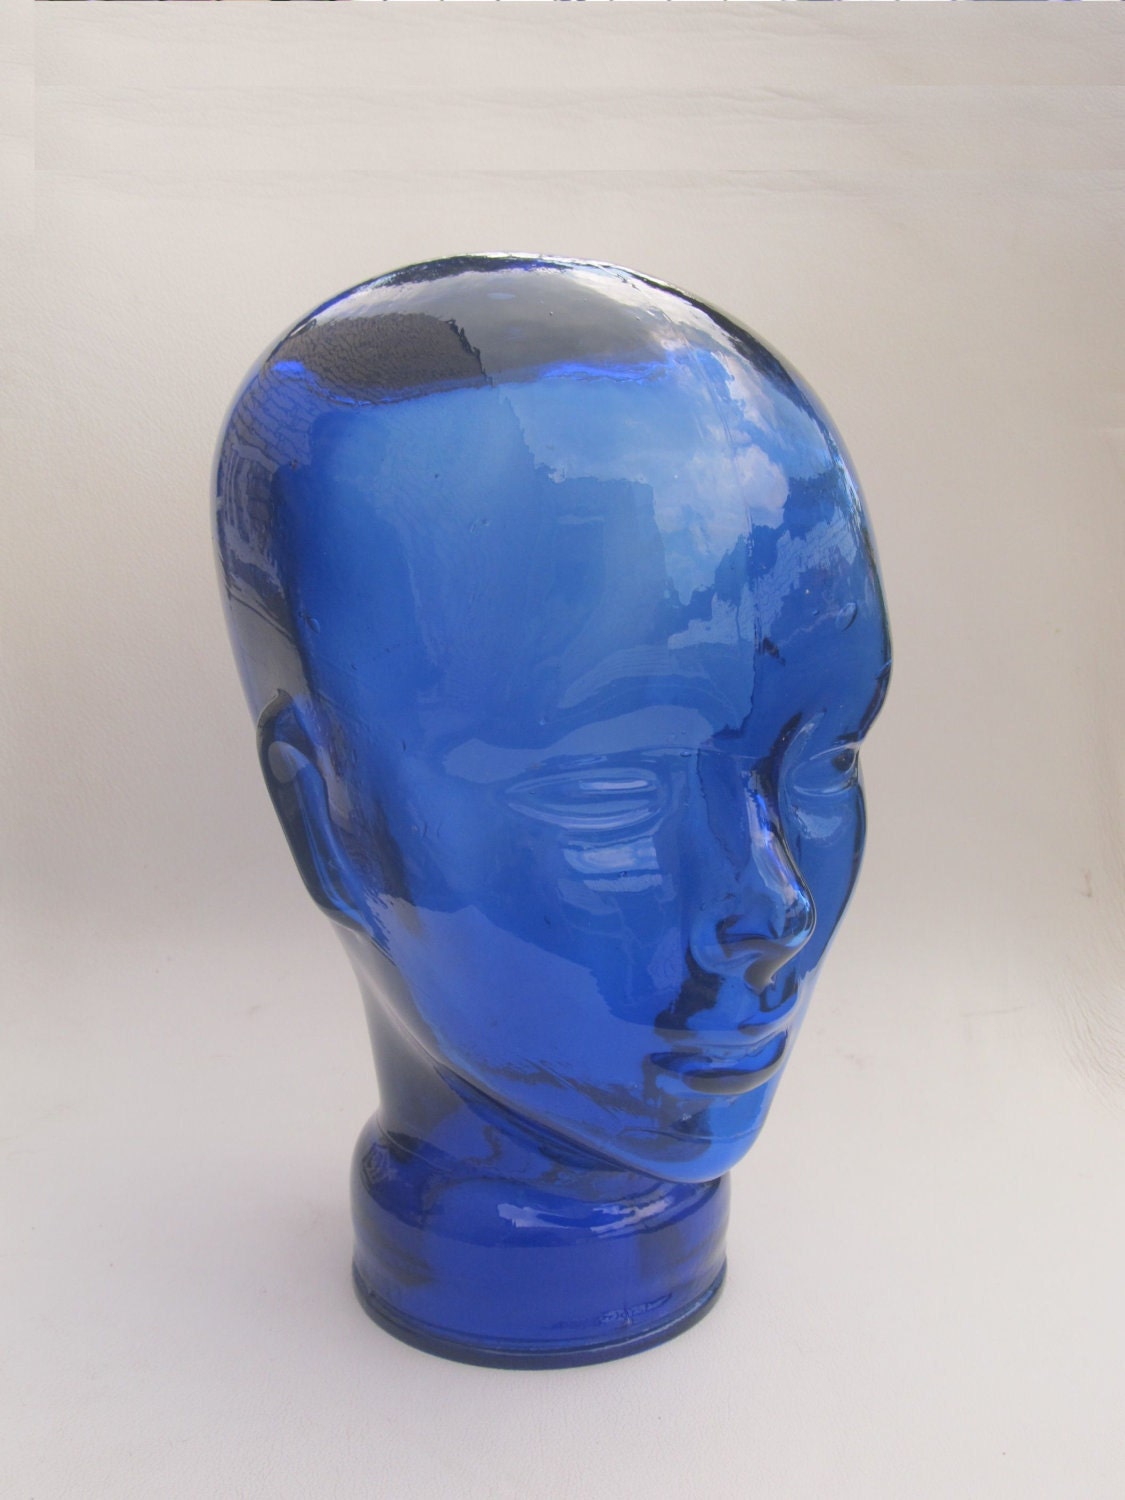 Blauw glazen hoofd uit de jaren 80, het typische hoofd uit de jaren 70 of 80 kan gebruikt worden voor je koptelefoon, pruik, zonnebril enz